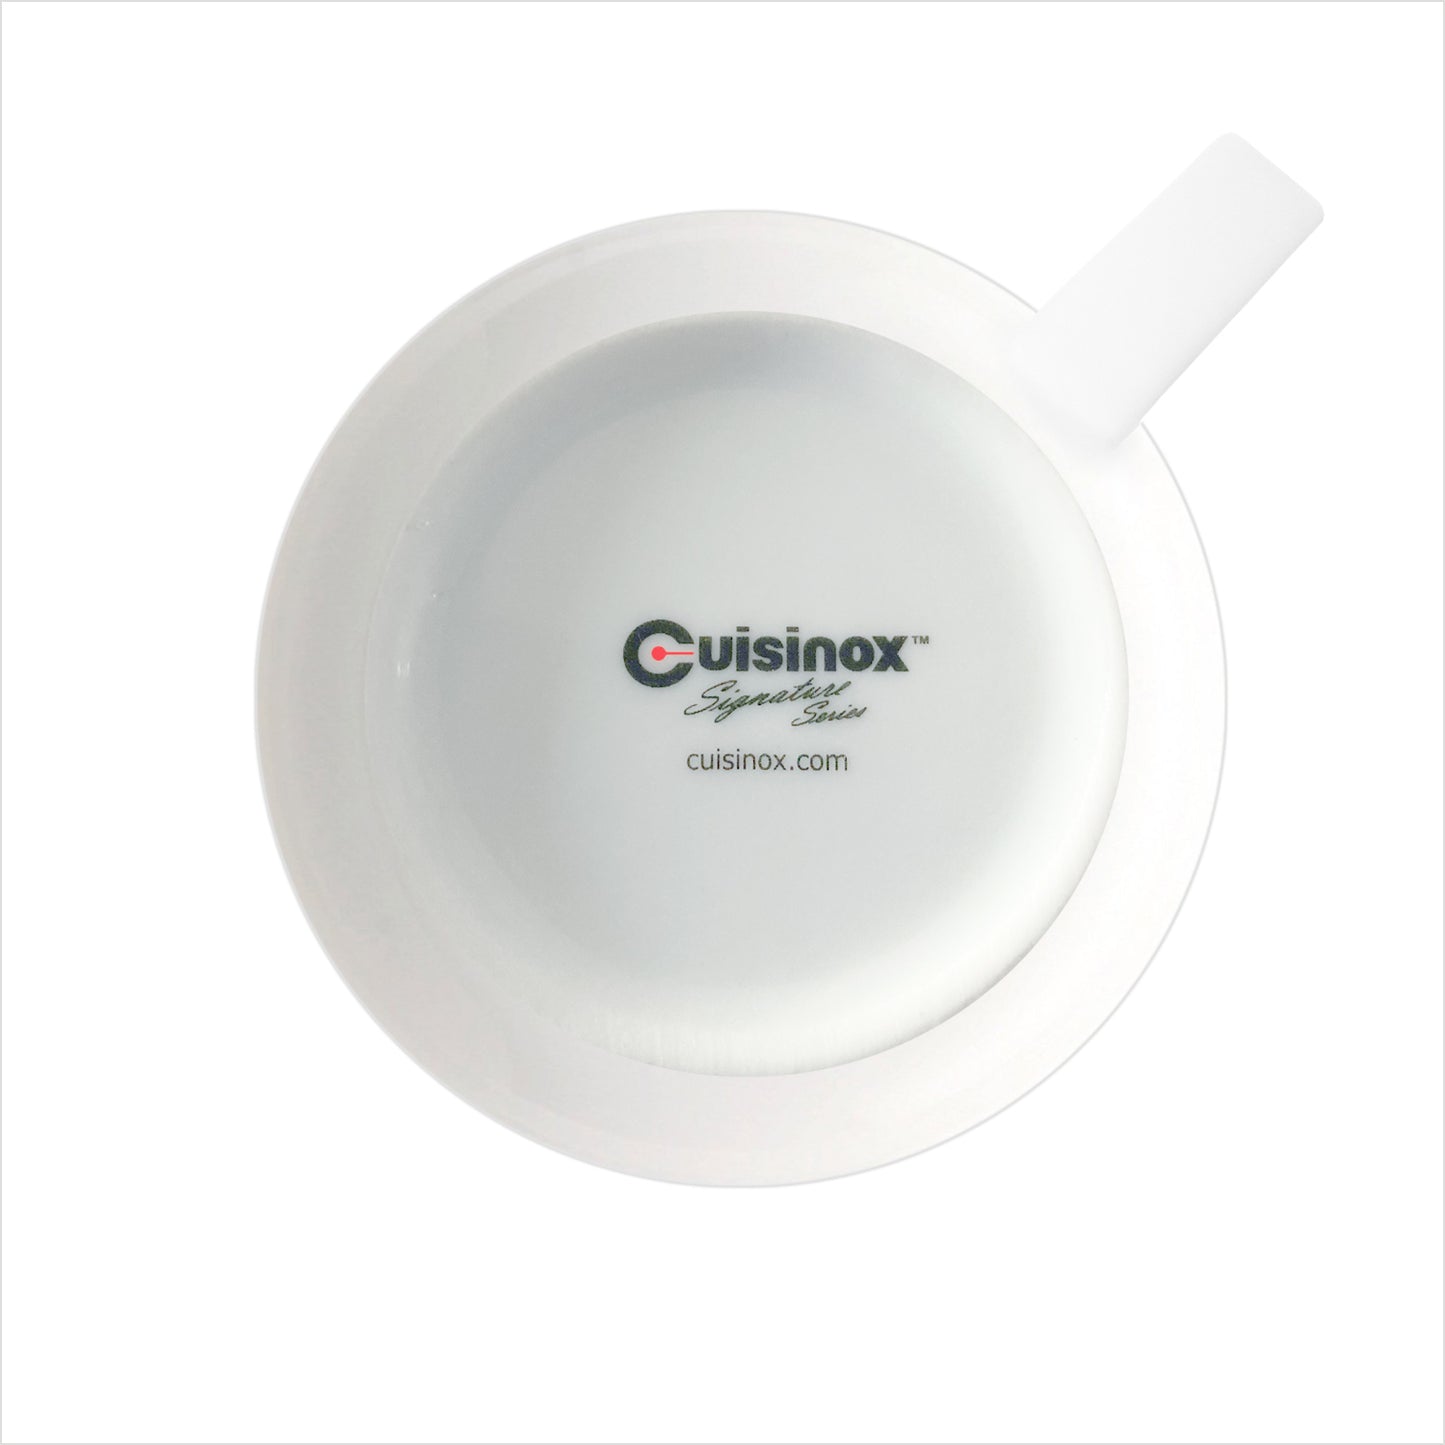 Cuisinox Signature Series Set of 4 Espresso Cups, White Porcelaine